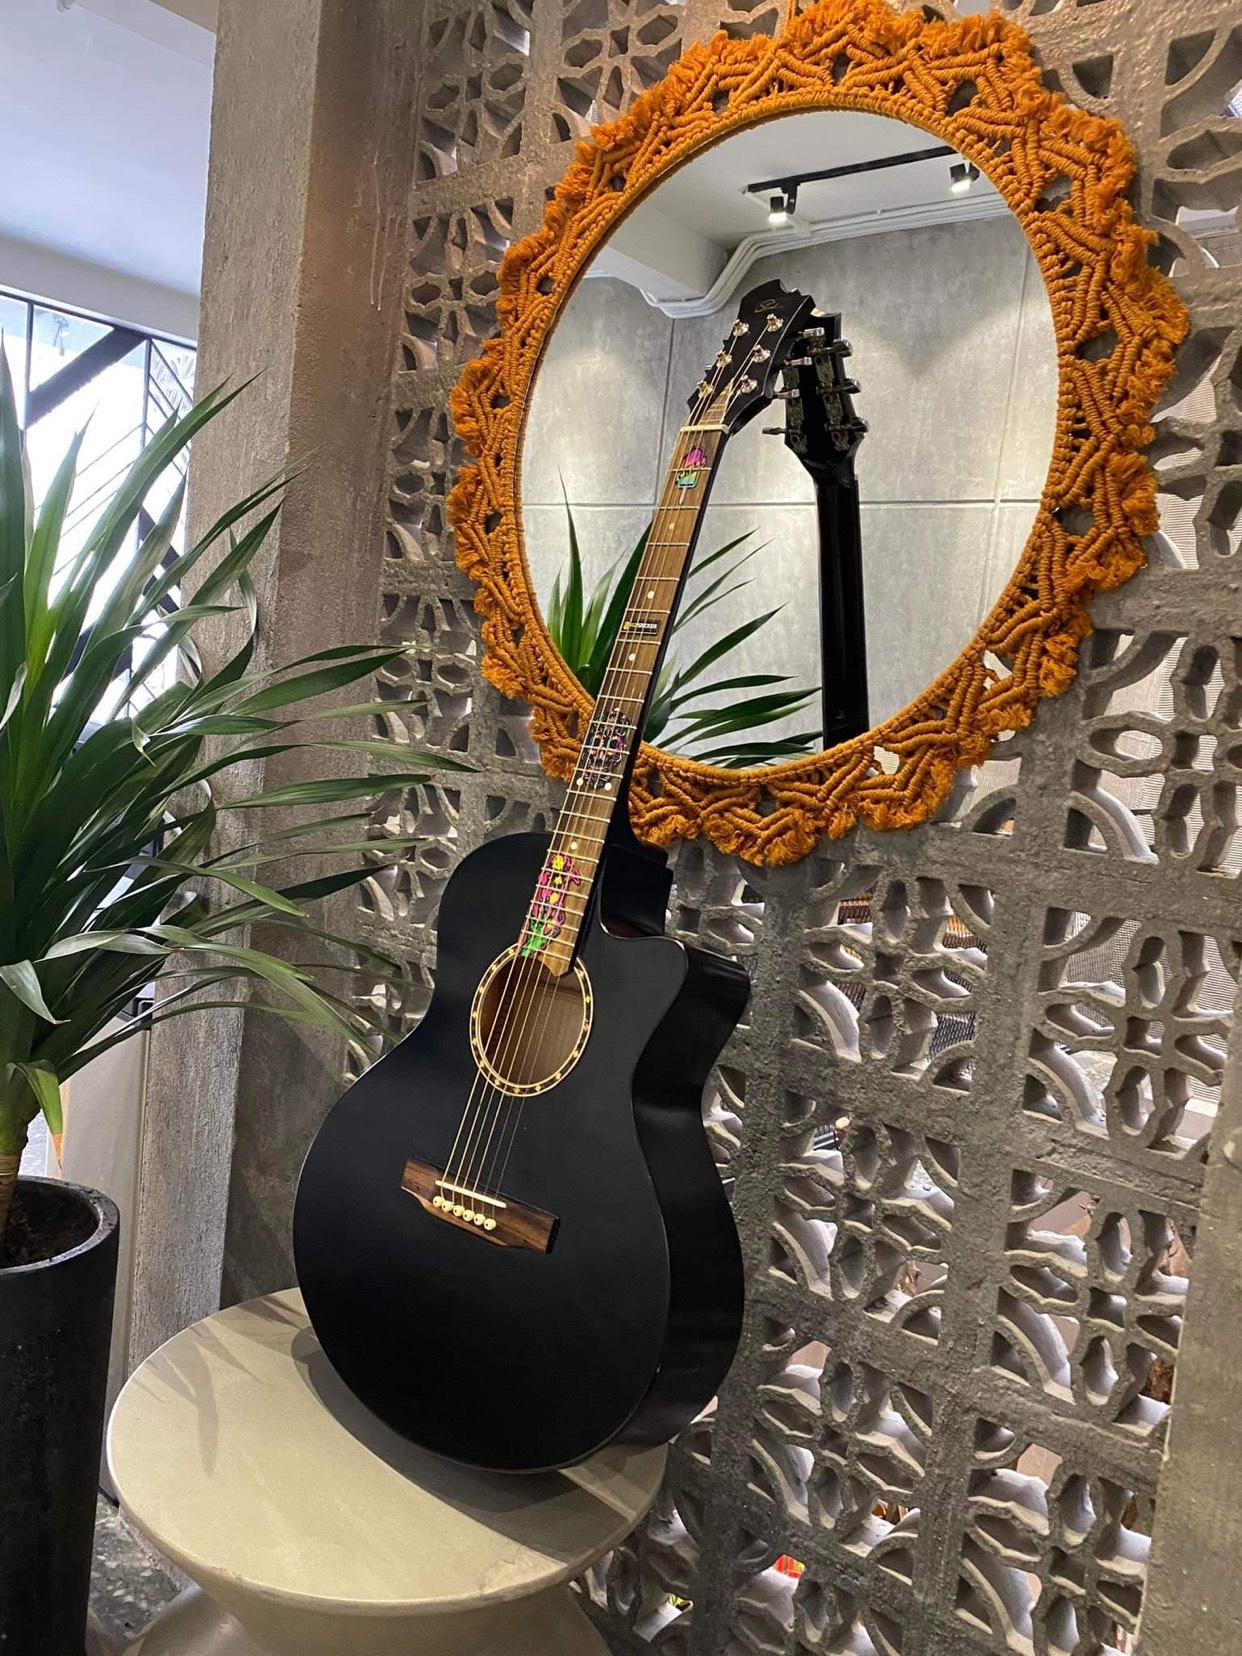 Đàn Guitar Acoustic ST-X1 Full size chất liệu gỗ nhập khẩu (màu đen) có ty chỉnh cần tặng kèm đầy đủ phụ kiện